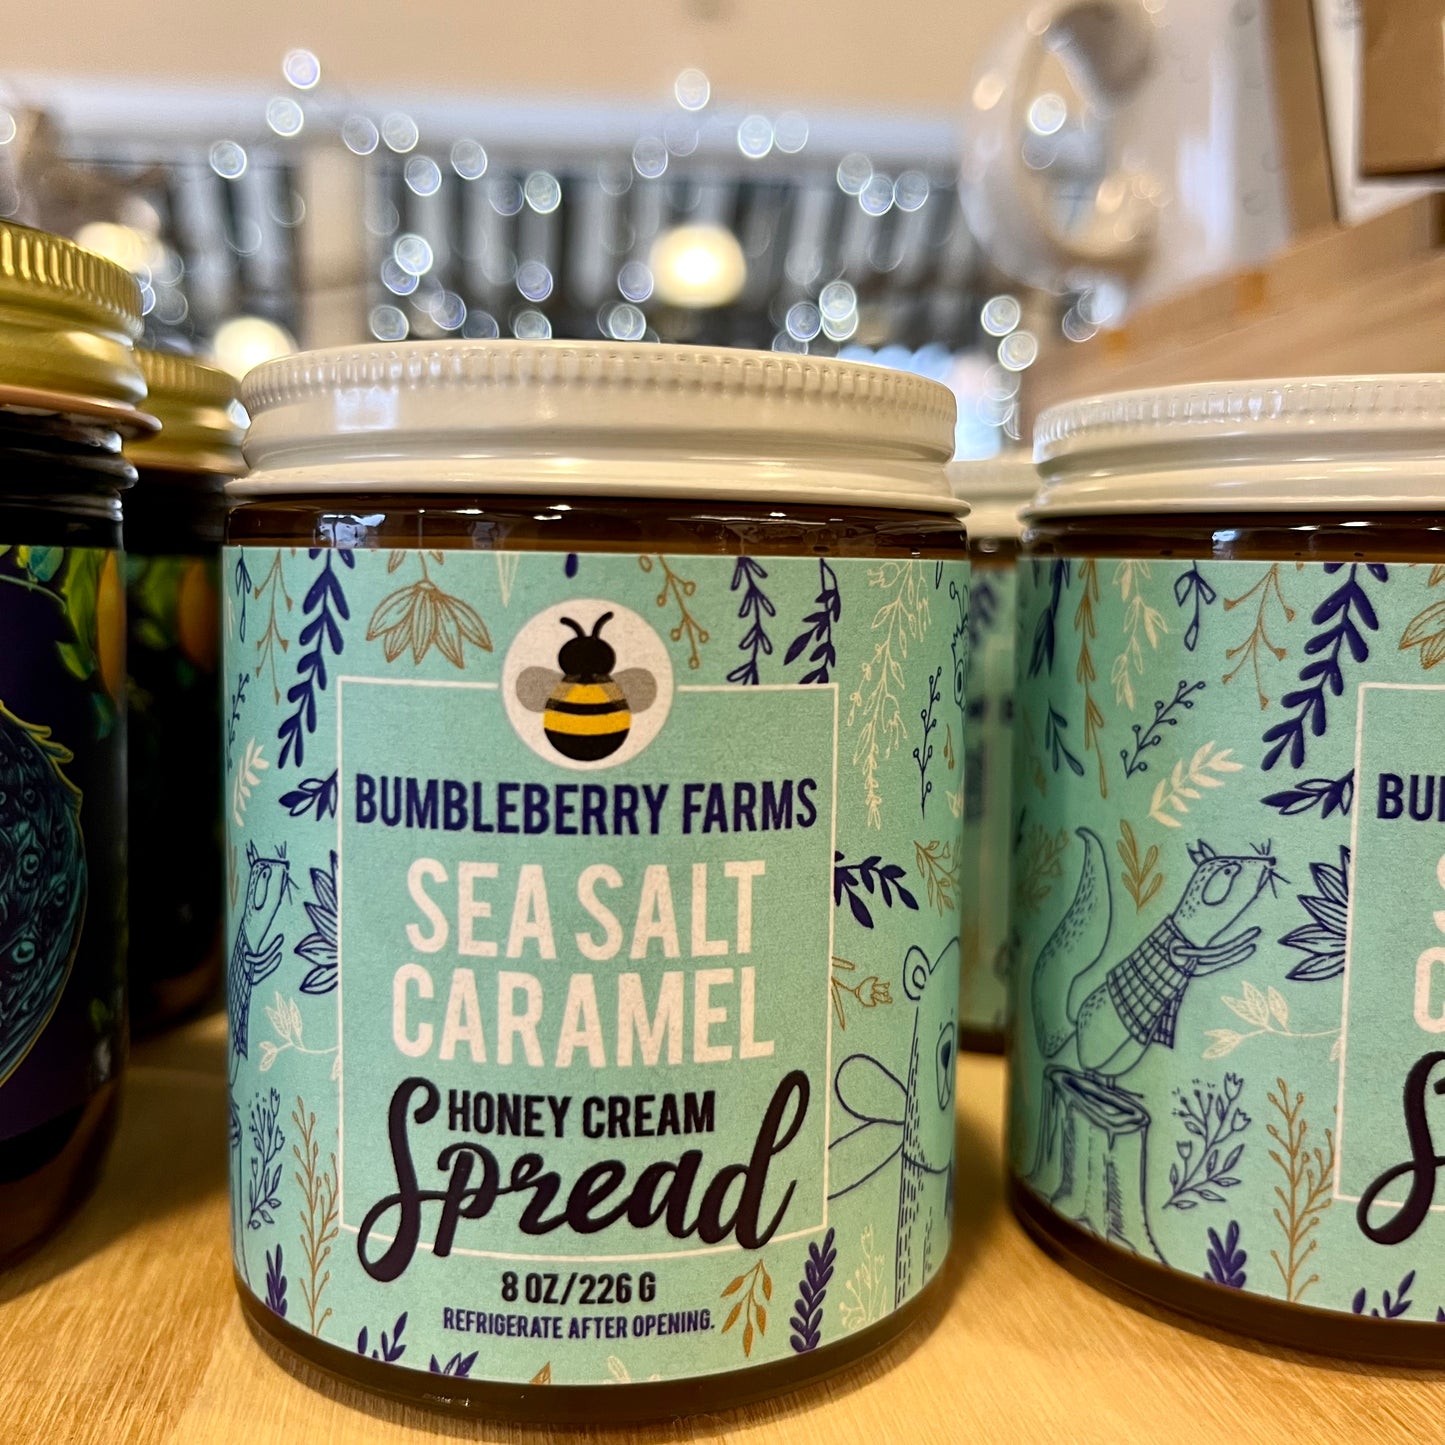 Sea Salt Caramel Spread